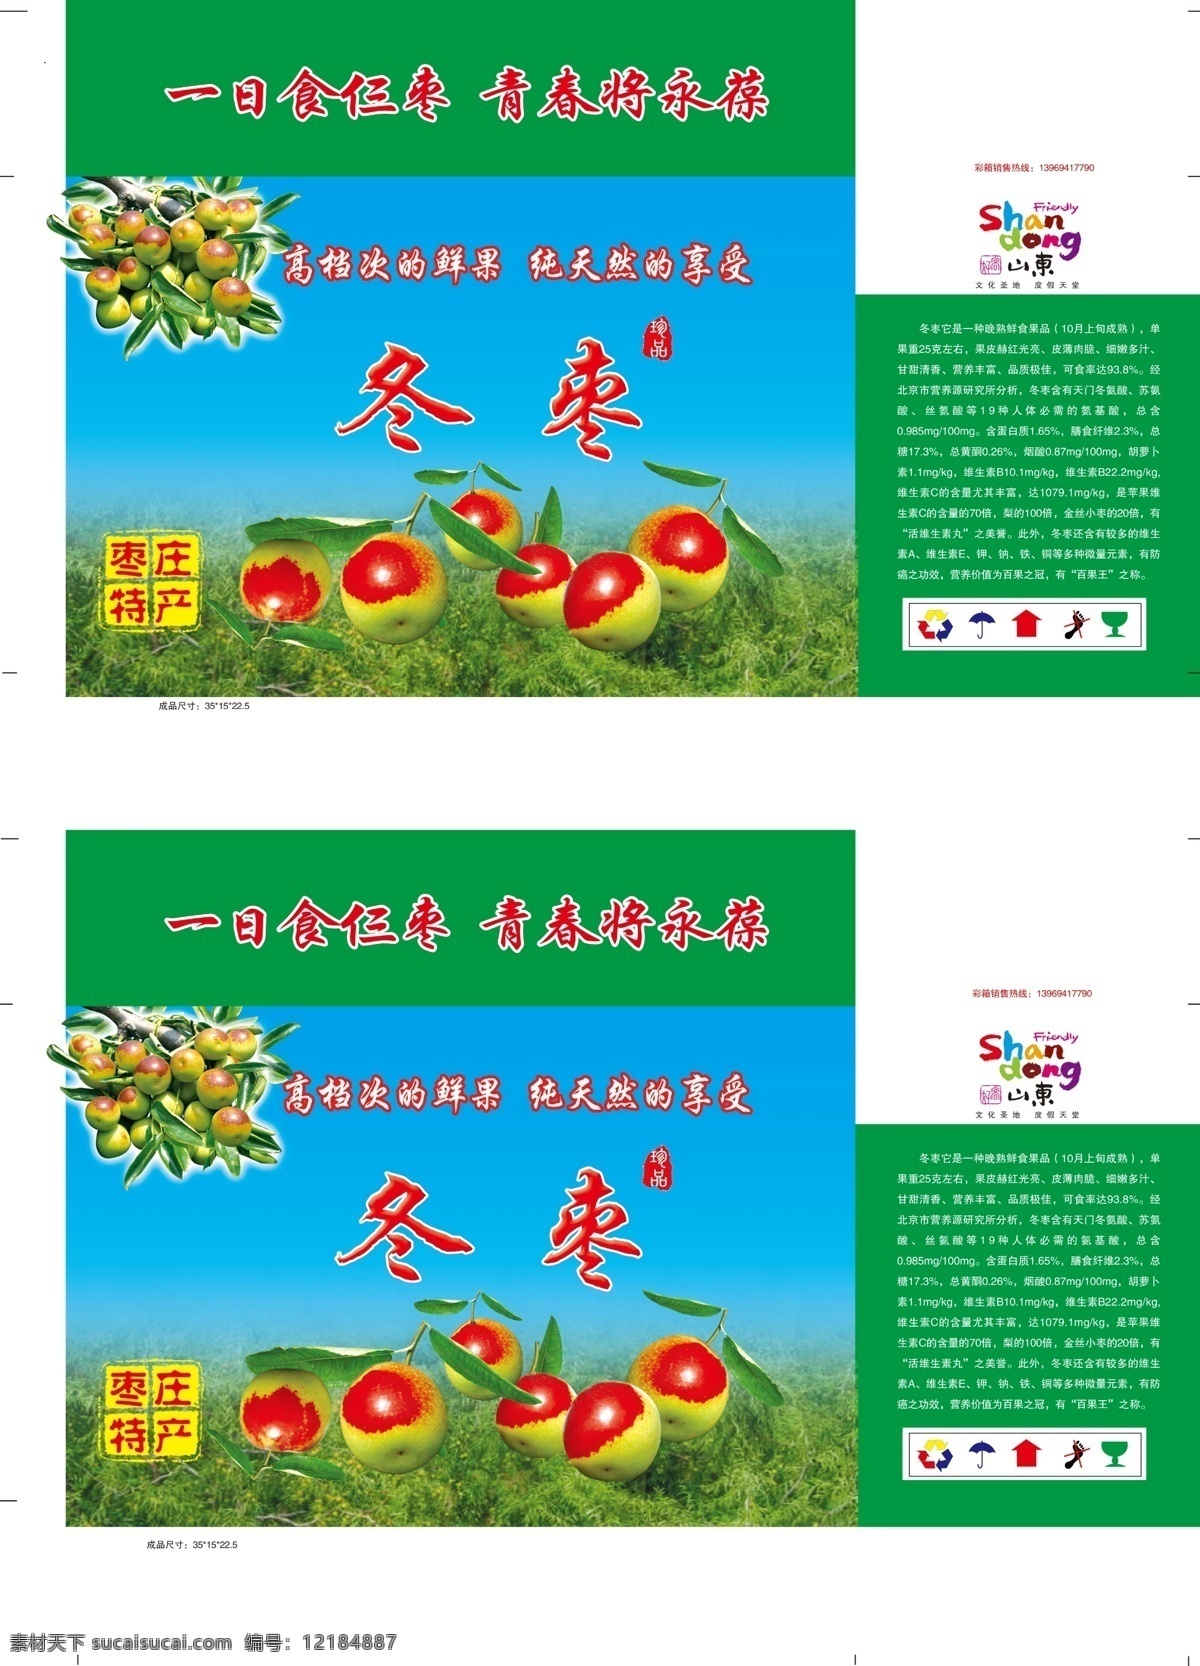 冬枣包装 冬枣 枣树 枣的营养价值 枣庄特产 包装设计 广告设计模板 源文件